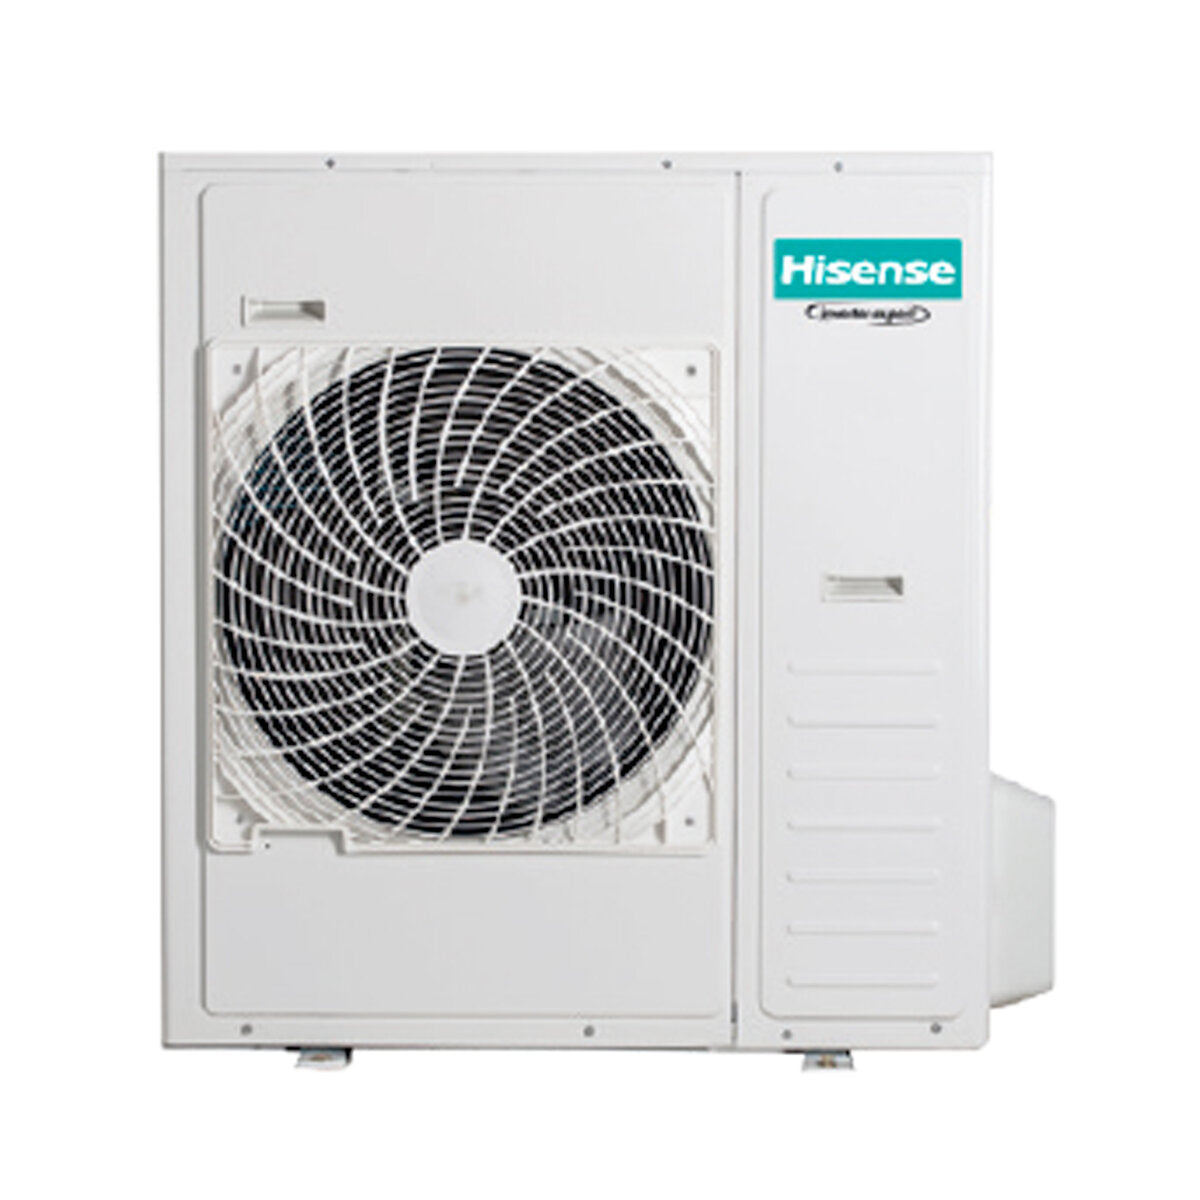 Hisense Hi-Comfort trial split air conditioner 7000+18000+24000 BTU wifi inverter outdoor unit 12.5 kW